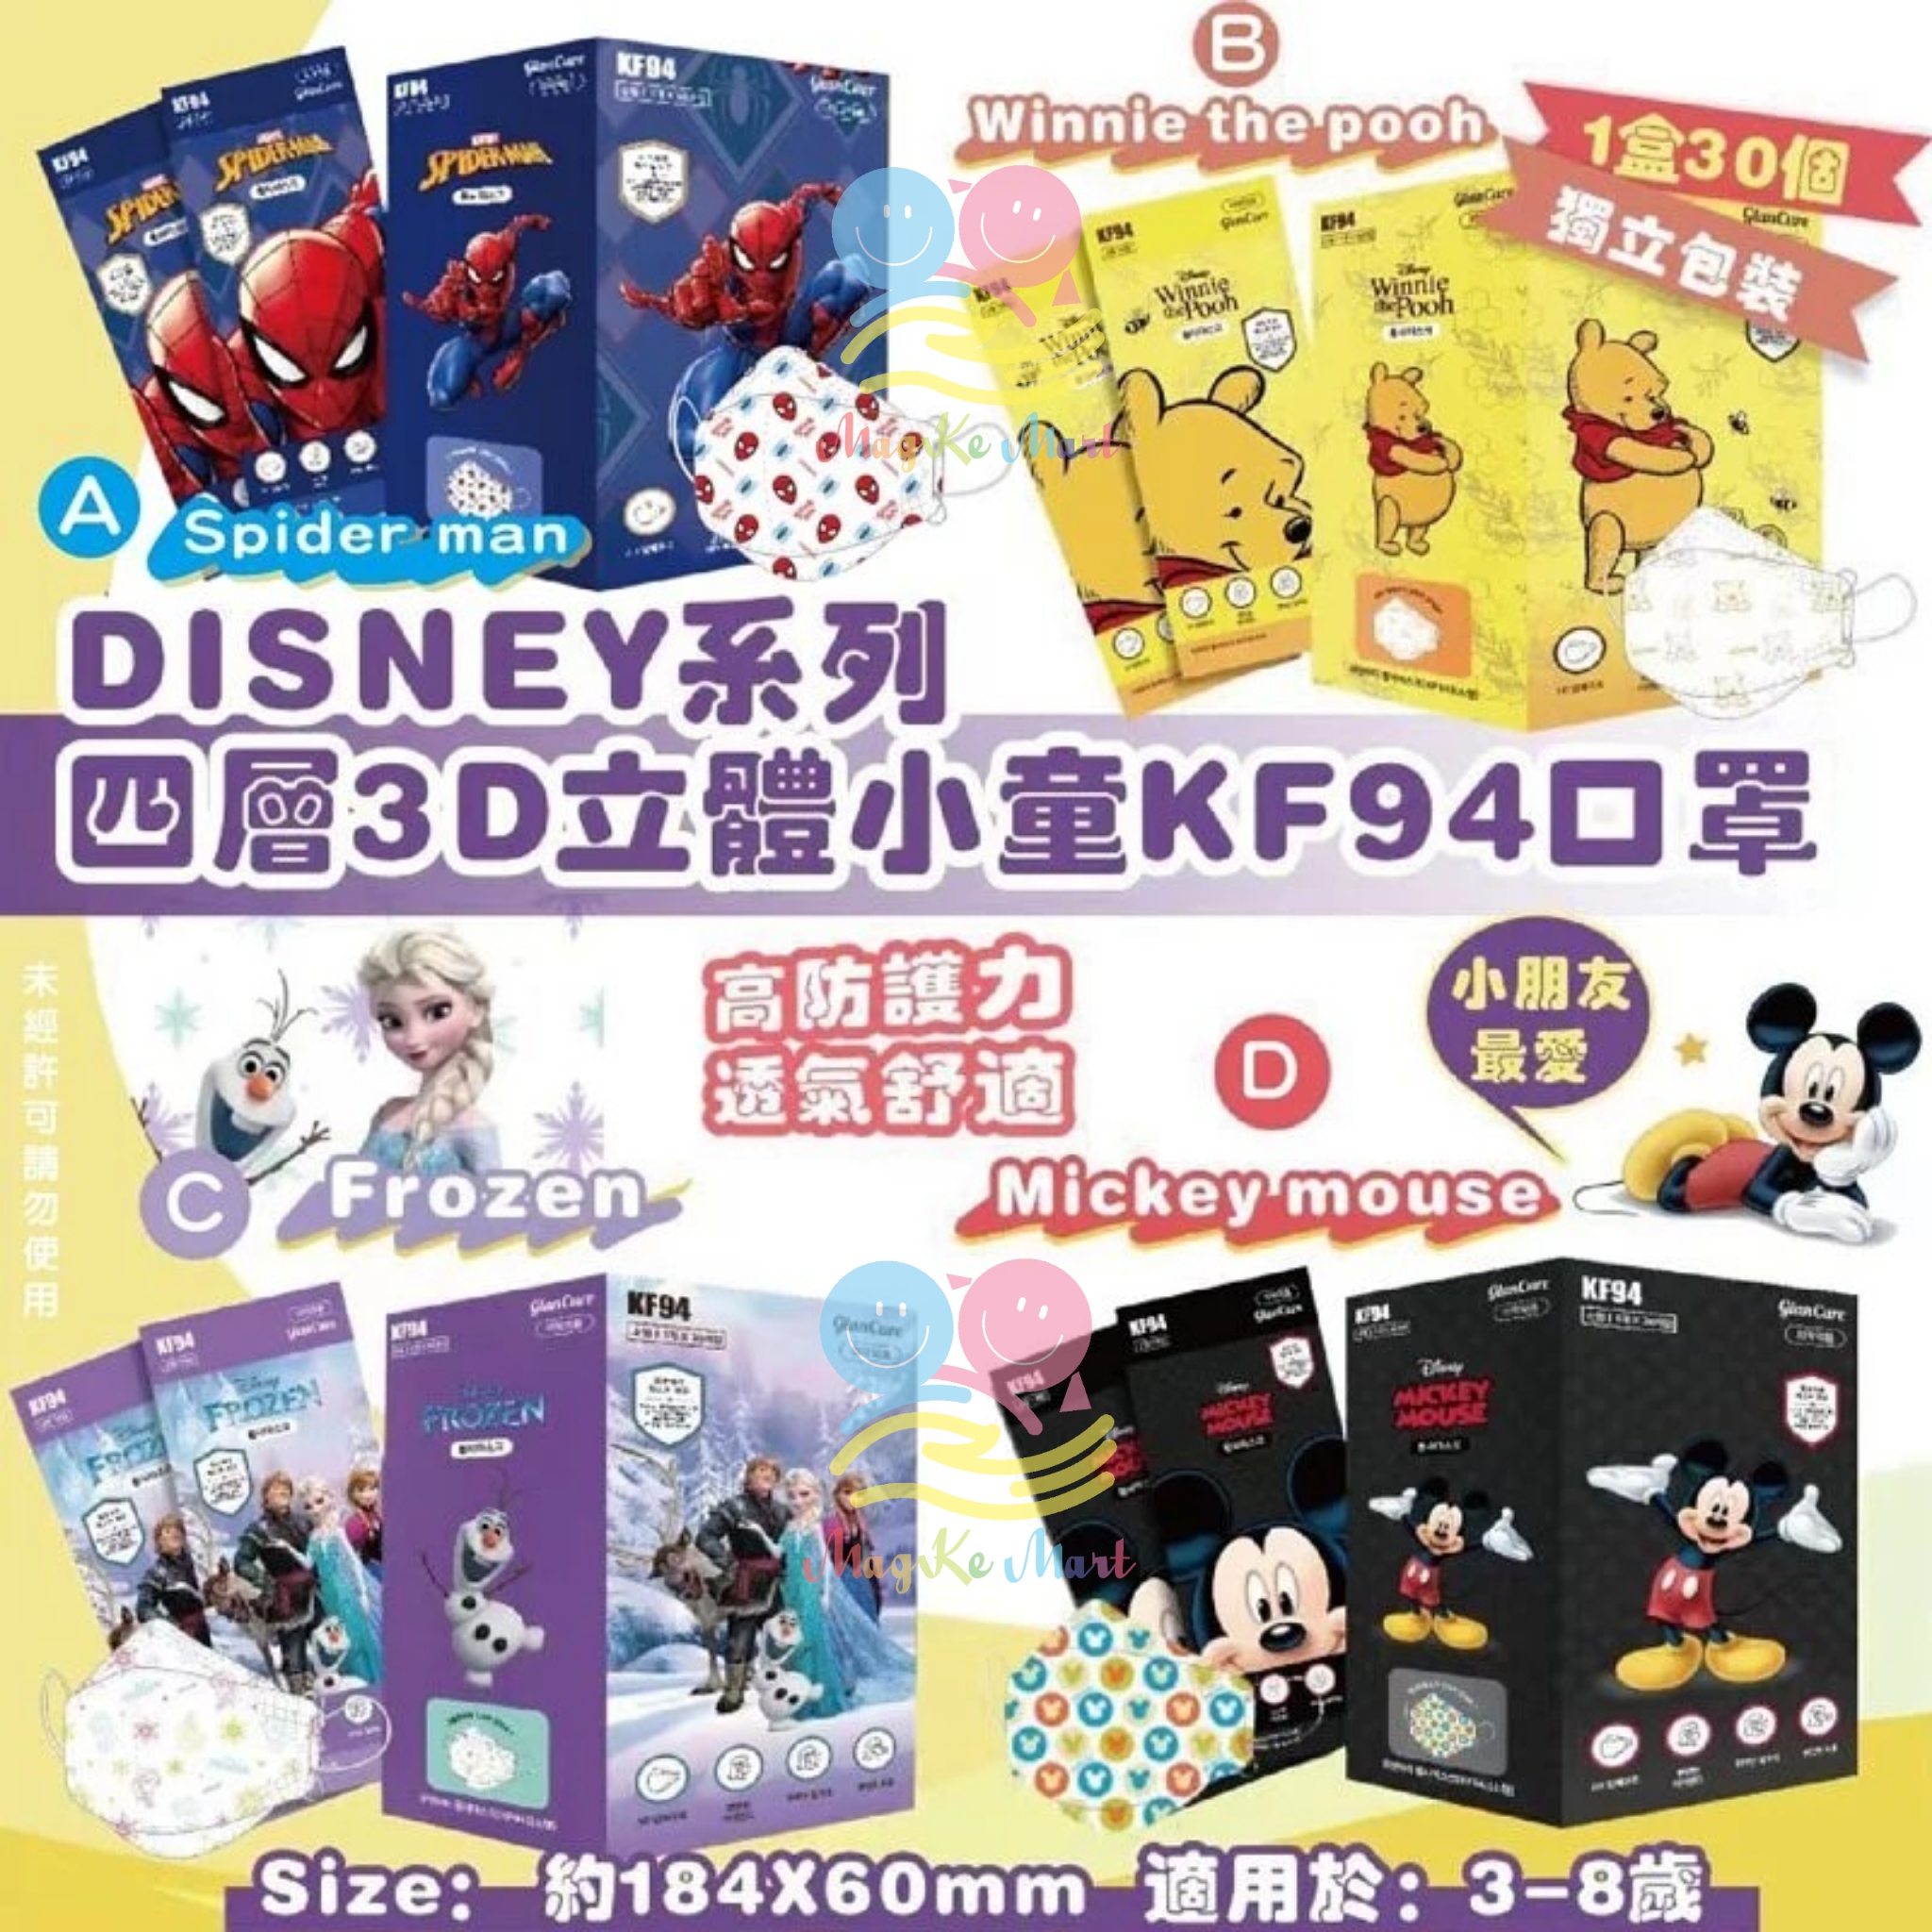 韓國 DISNEY 迪士尼系列KF94四層3D立體小童口罩(1盒30個)(獨立包裝) (D) Mickey mouse